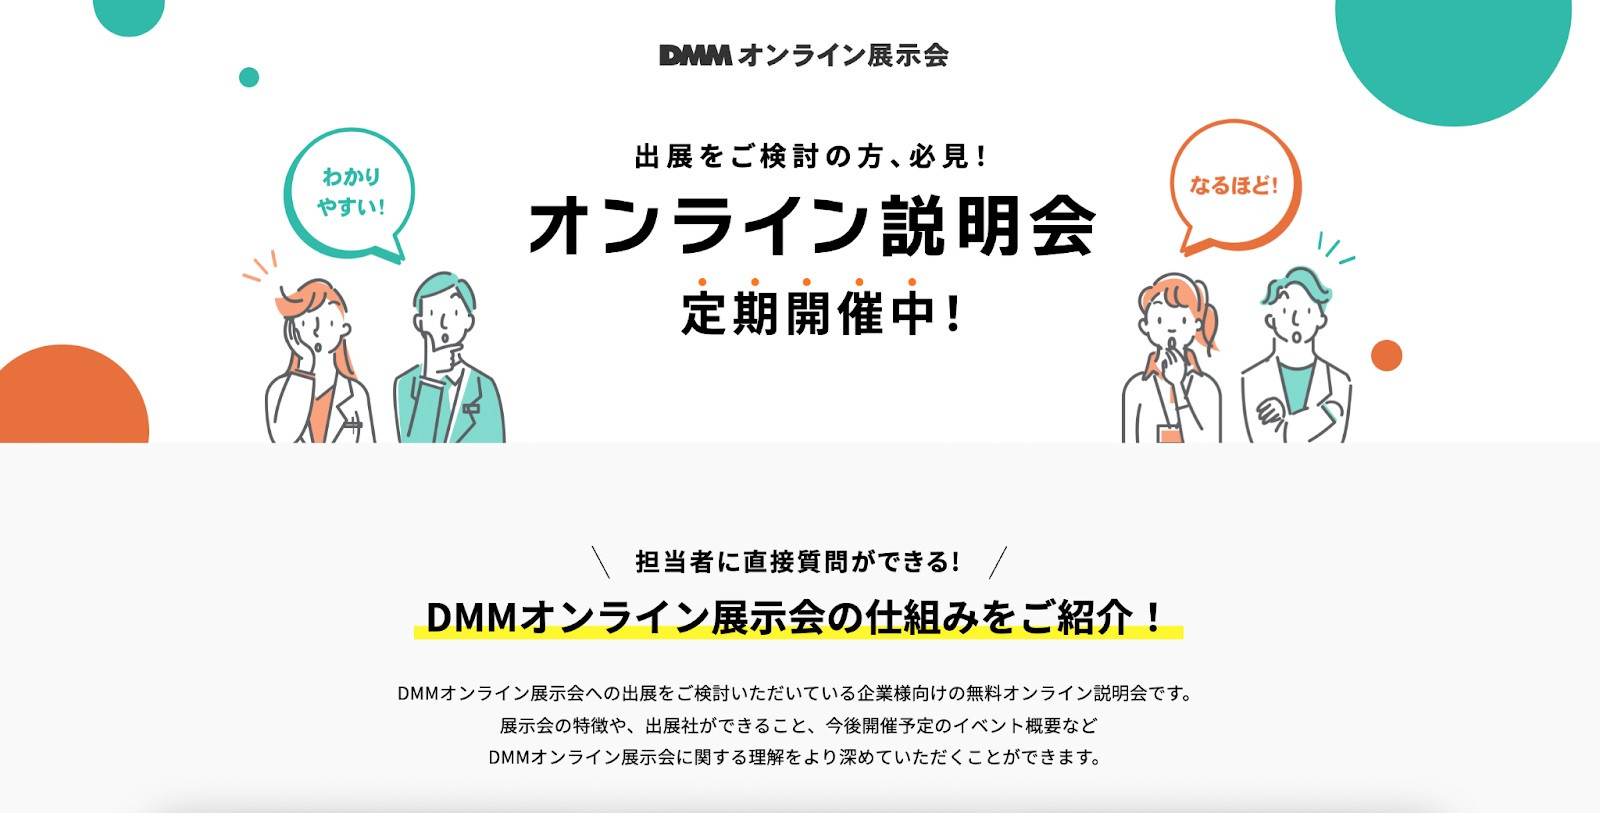 ■DMMオンライン展示